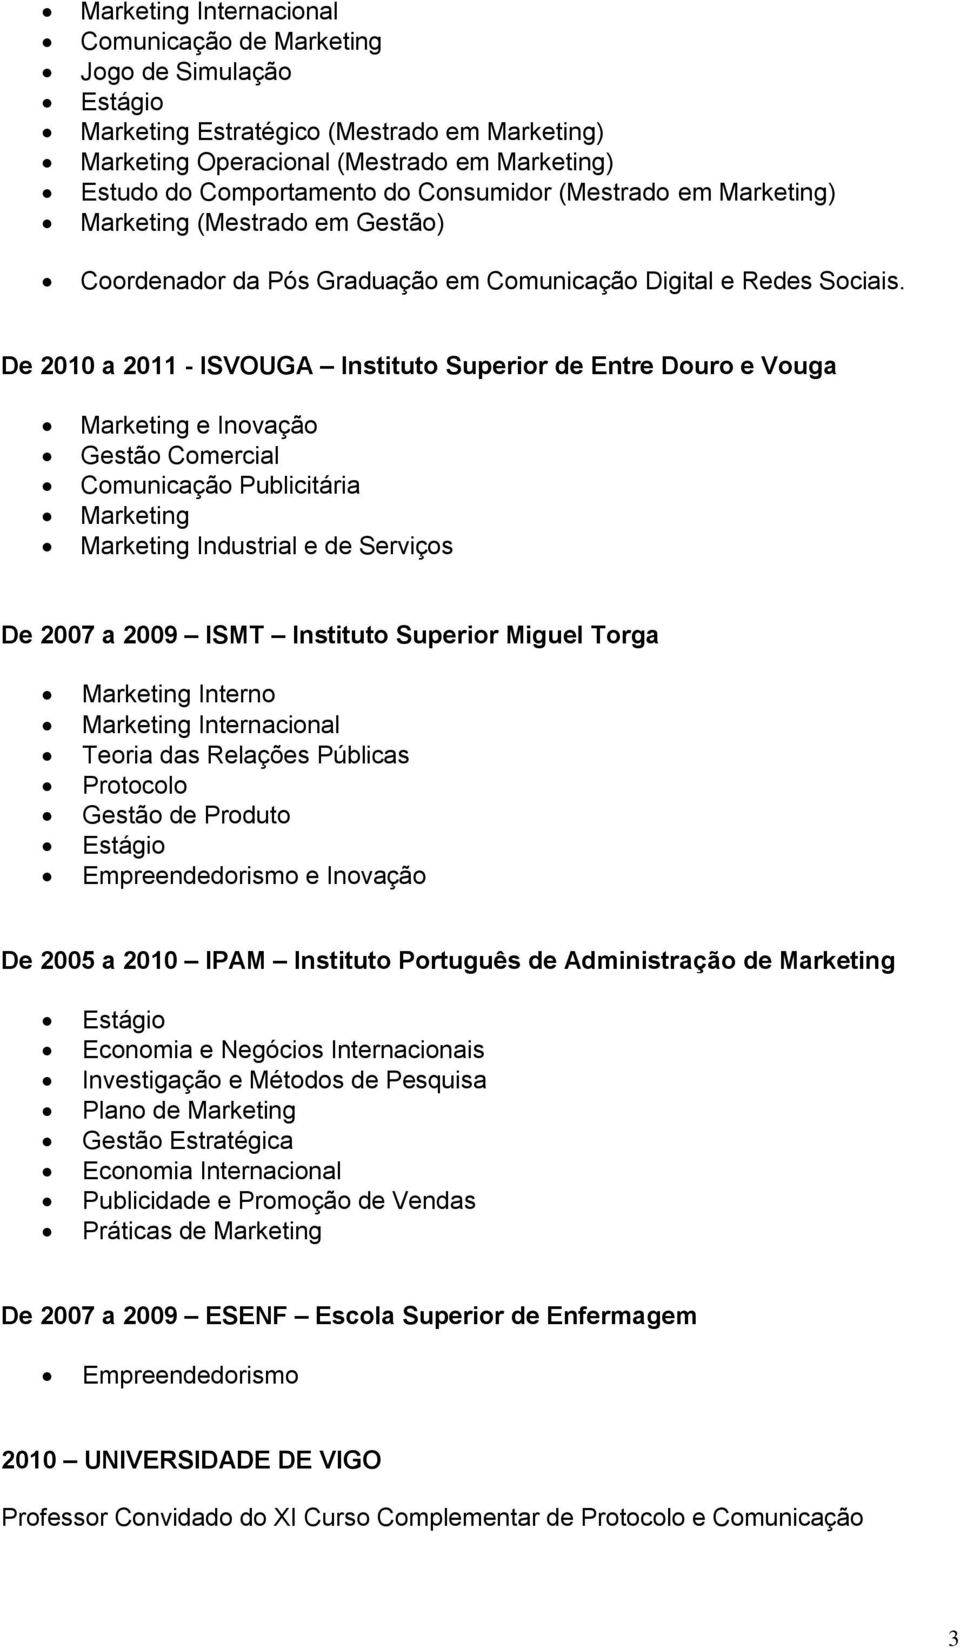 De 2010 a 2011 - ISVOUGA Instituto Superior de Entre Douro e Vouga Marketing e Inovação Gestão Comercial Comunicação Publicitária Marketing Marketing Industrial e de Serviços De 2007 a 2009 ISMT